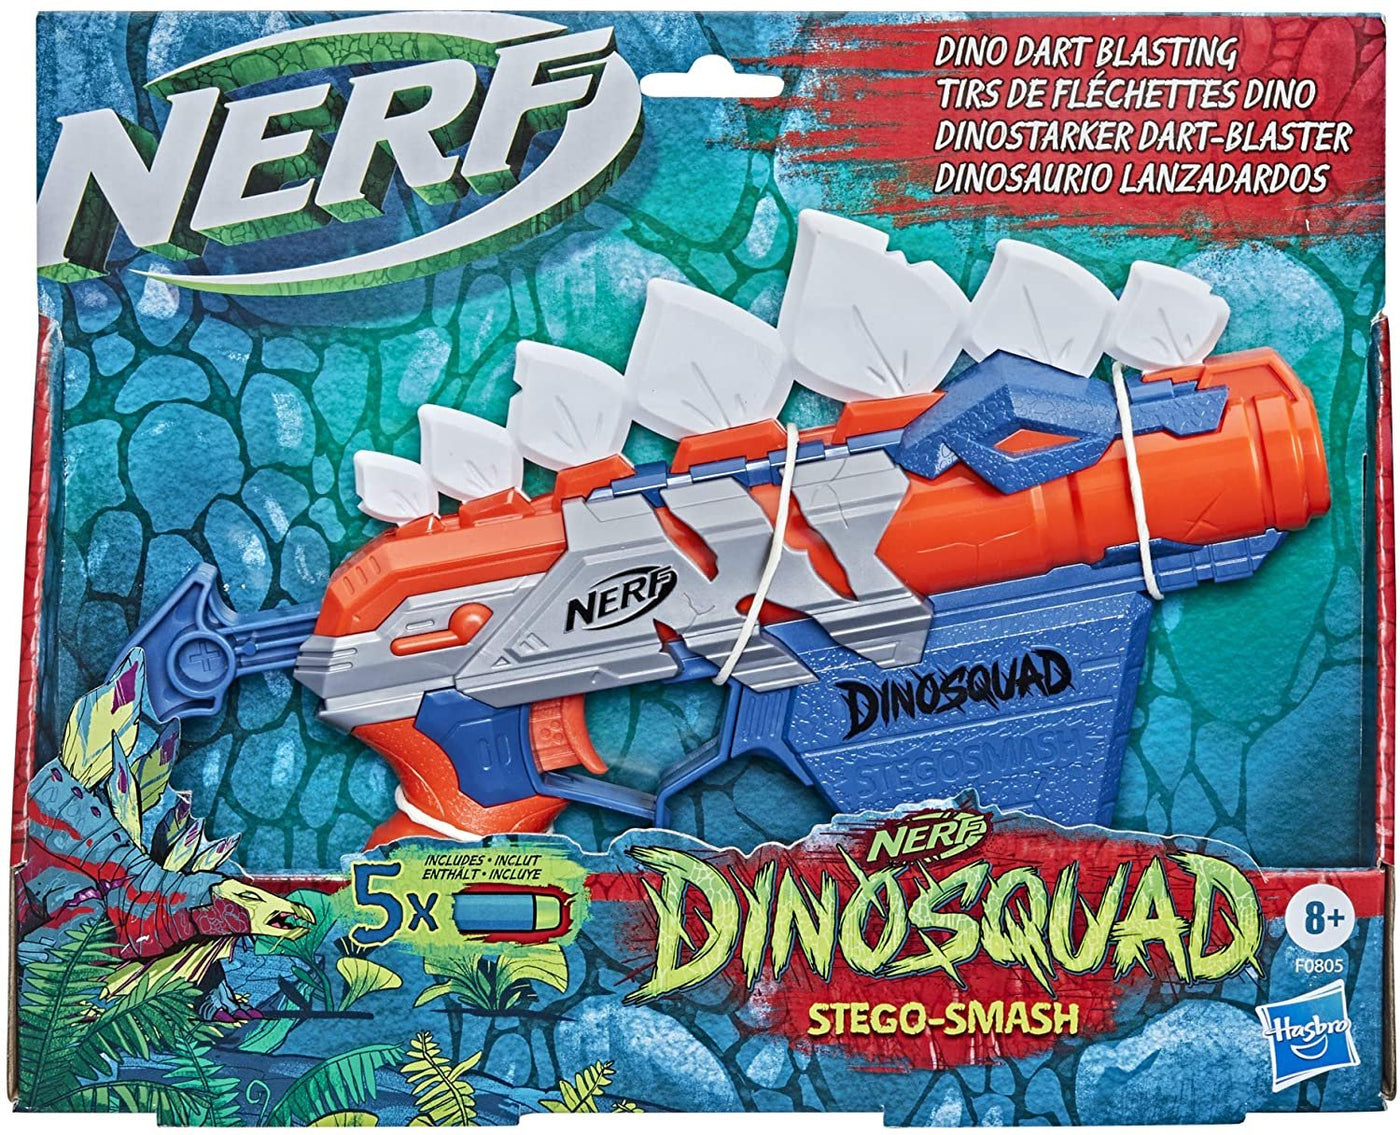 NERF DinoSquad Stegosmash Blaster